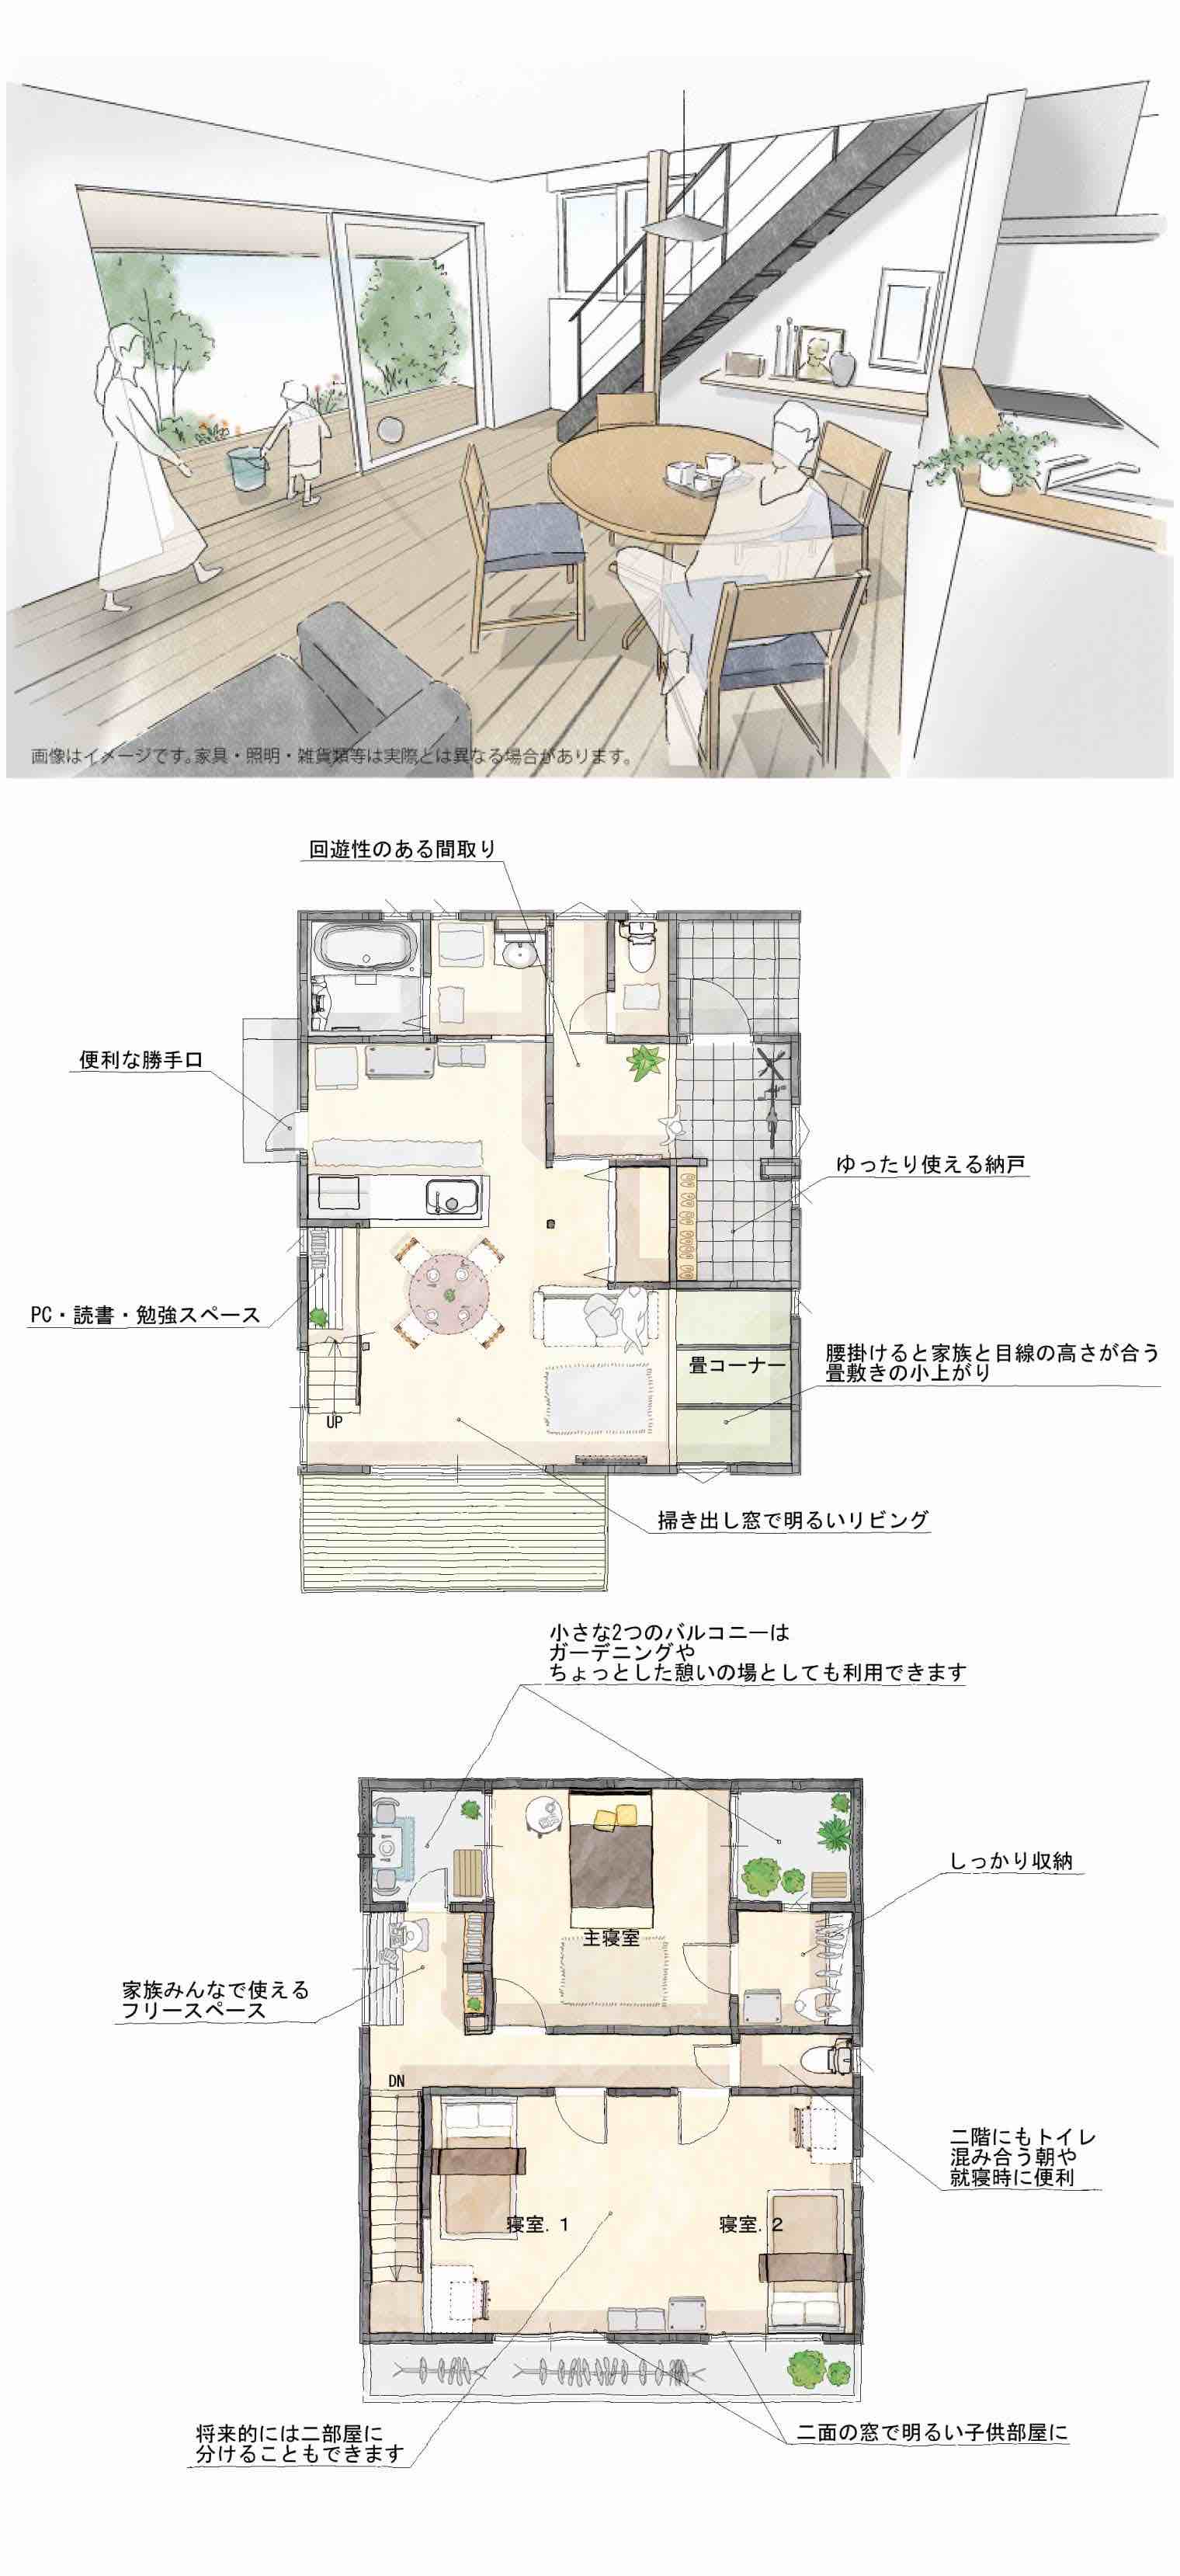 2023年2月18日・19日 「家族を感じられる家」建築家住宅 完成見学会@松本市並柳